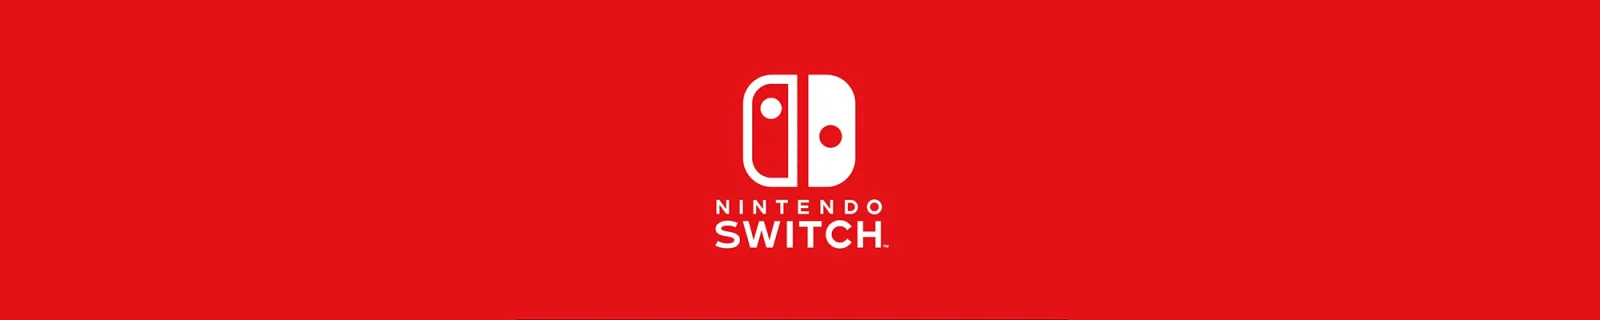 任天堂新主机Switch公布 2017年3月发售